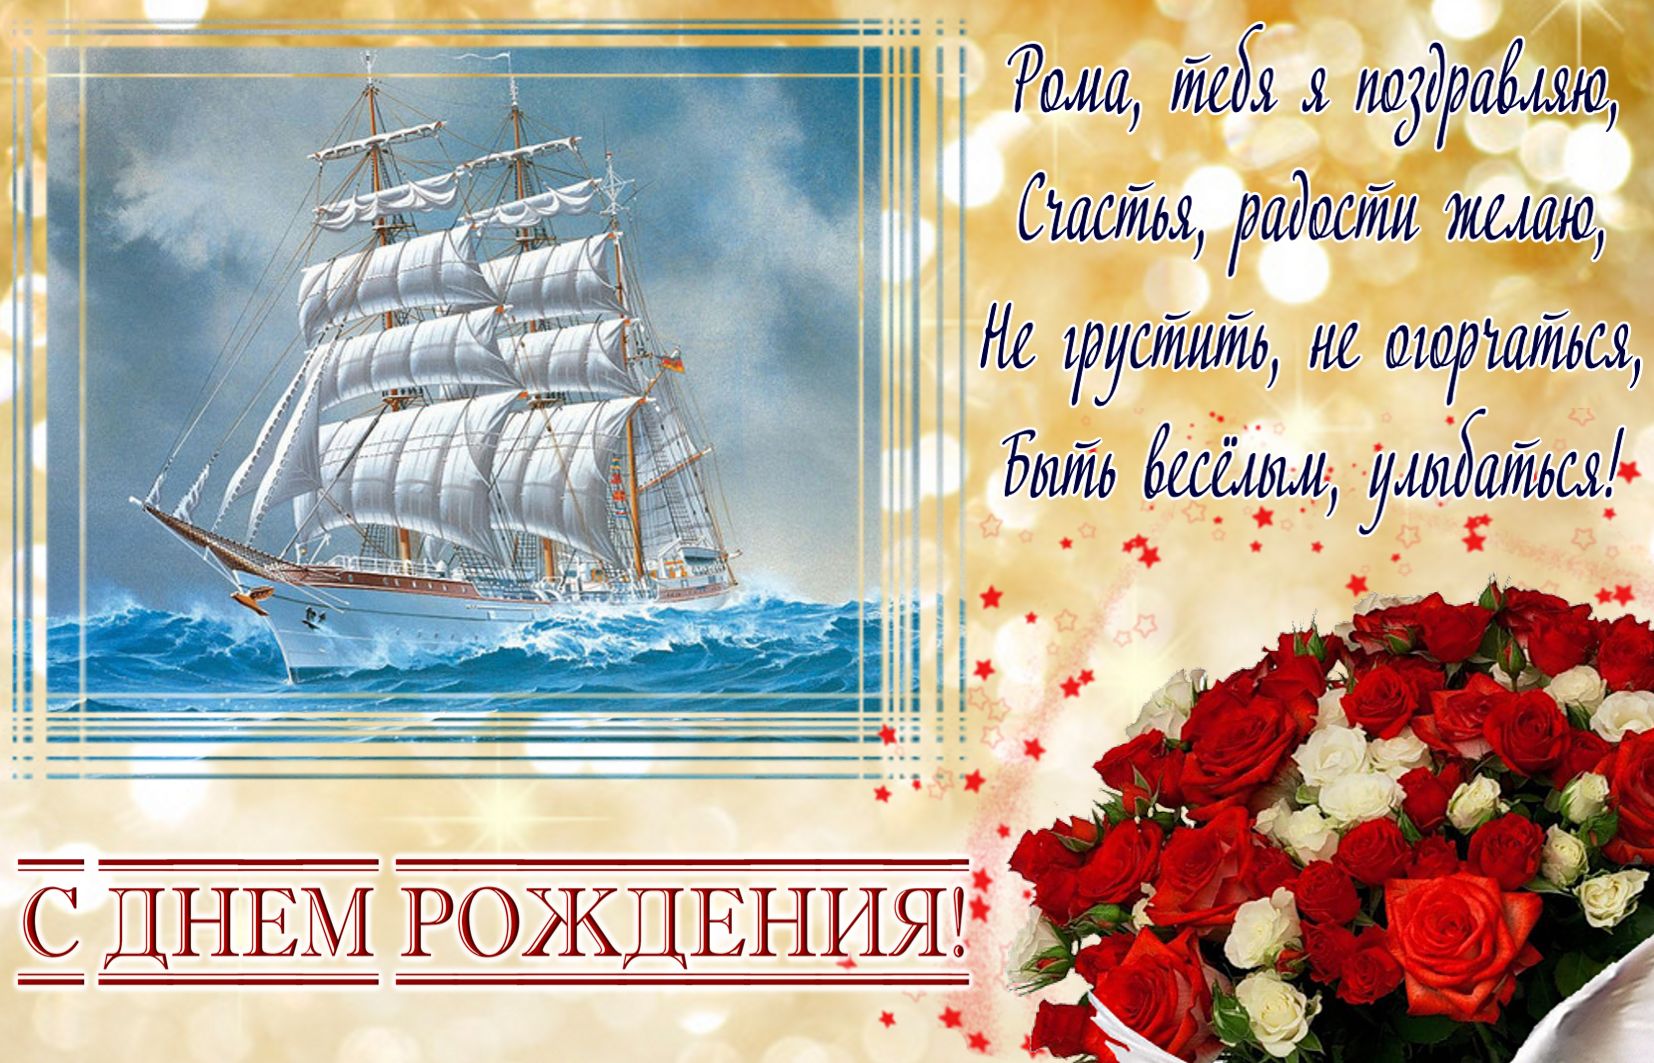 Картинка на День рождения Роме с яхтой и букетом роз